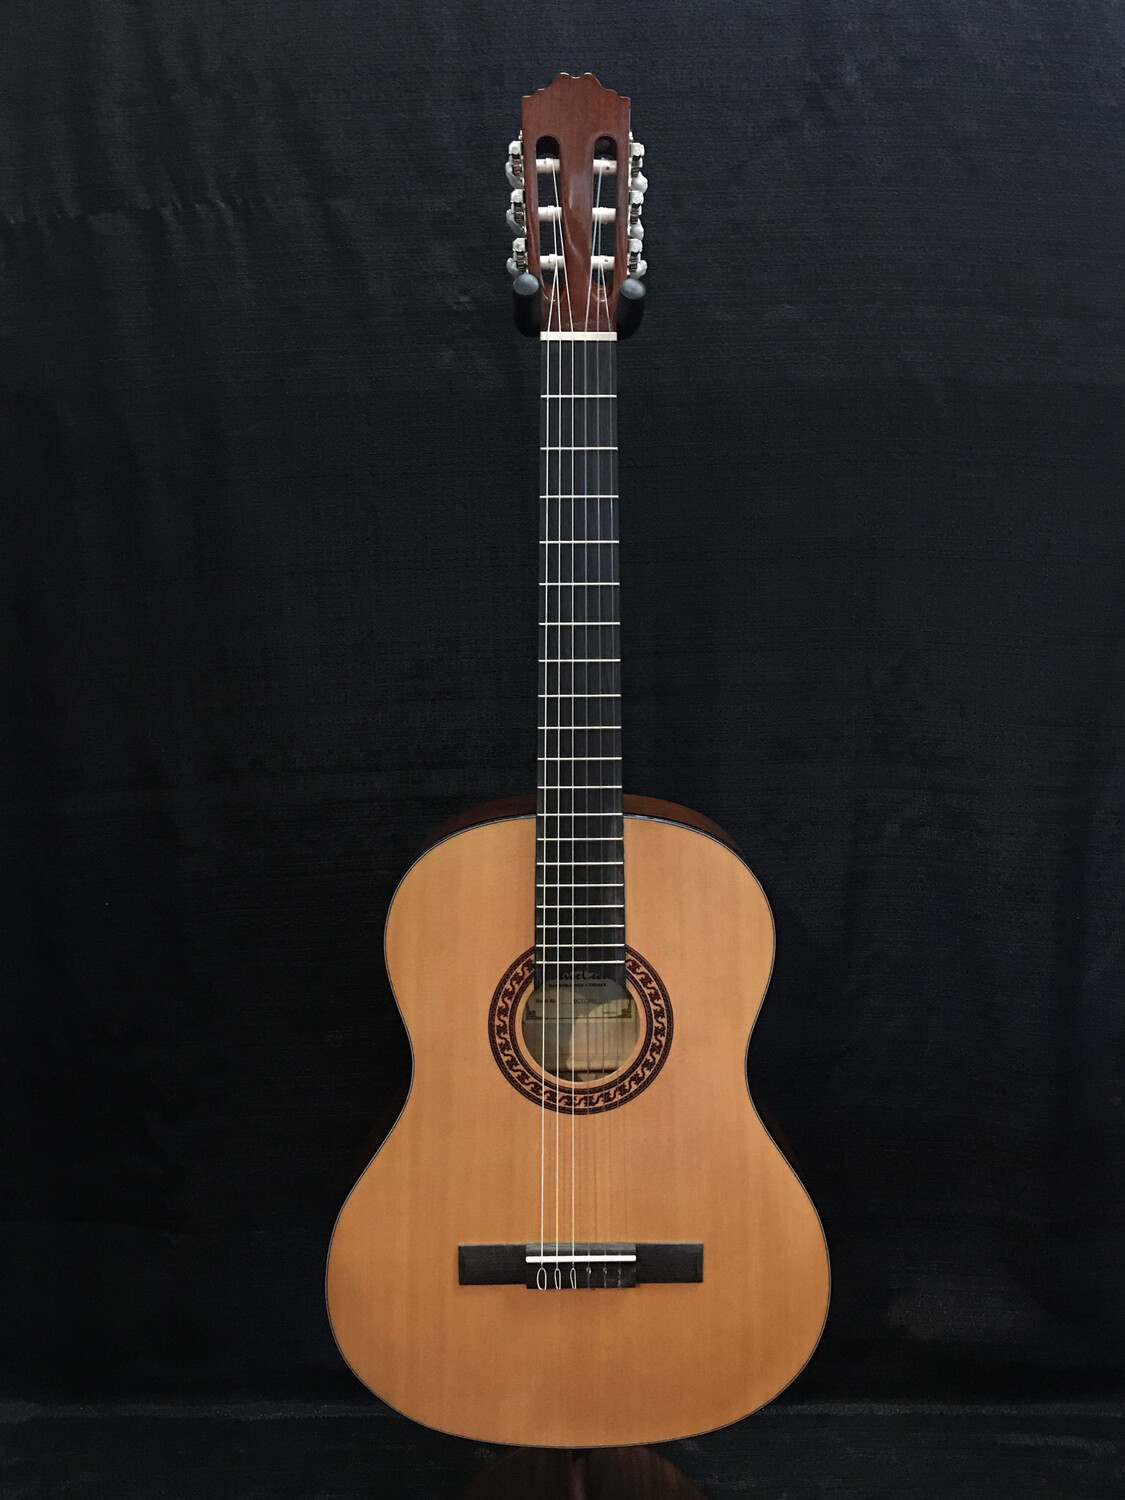 Beaver Creek Classical Guitar With Bag - BCTC901